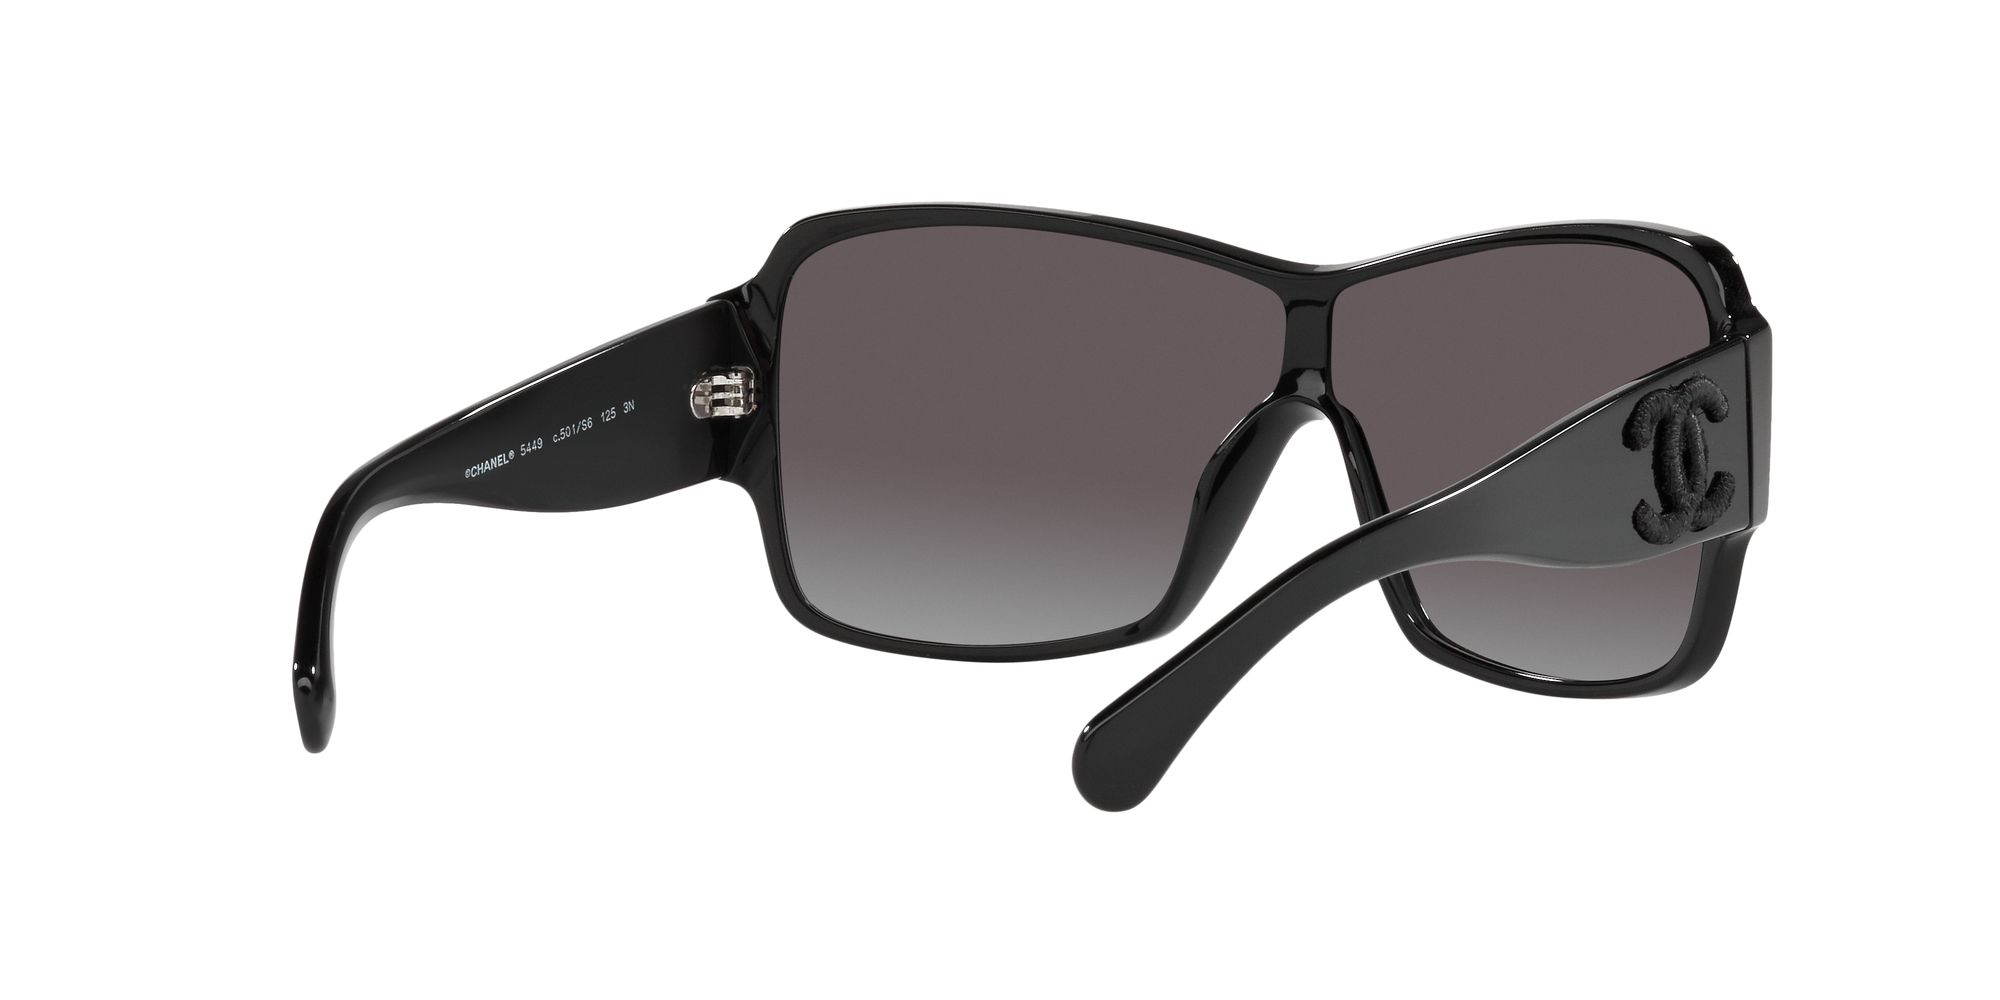 Sunglasses Chanel Black in Plastic - 36933490